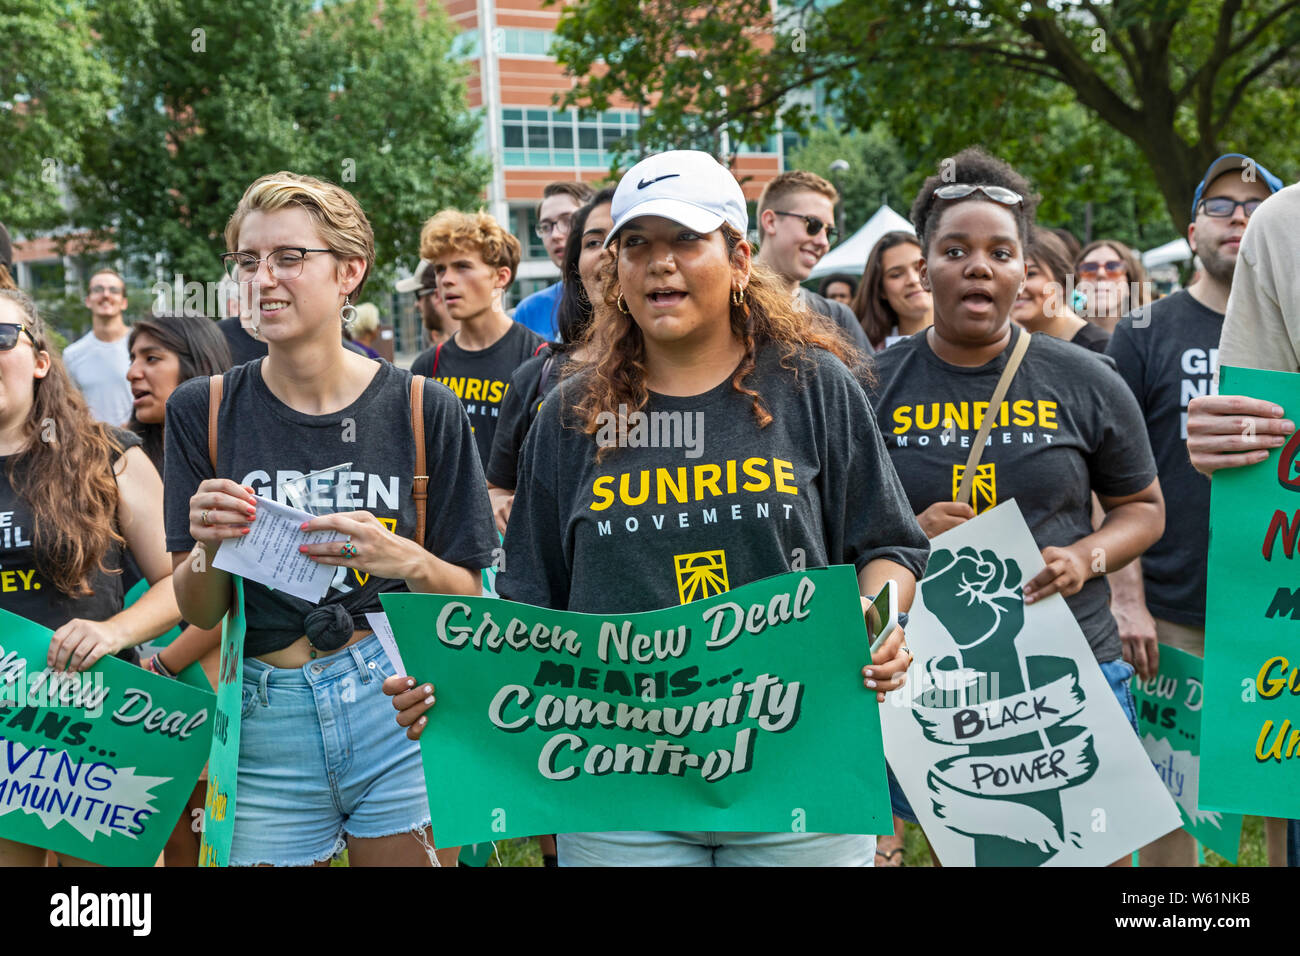 Detroit, Michigan, USA - 30 juillet 2019 - Des activistes, dont un grand nombre de mouvement de l'aube, se sont rassemblées devant la première nuit de la Conclusi Banque D'Images